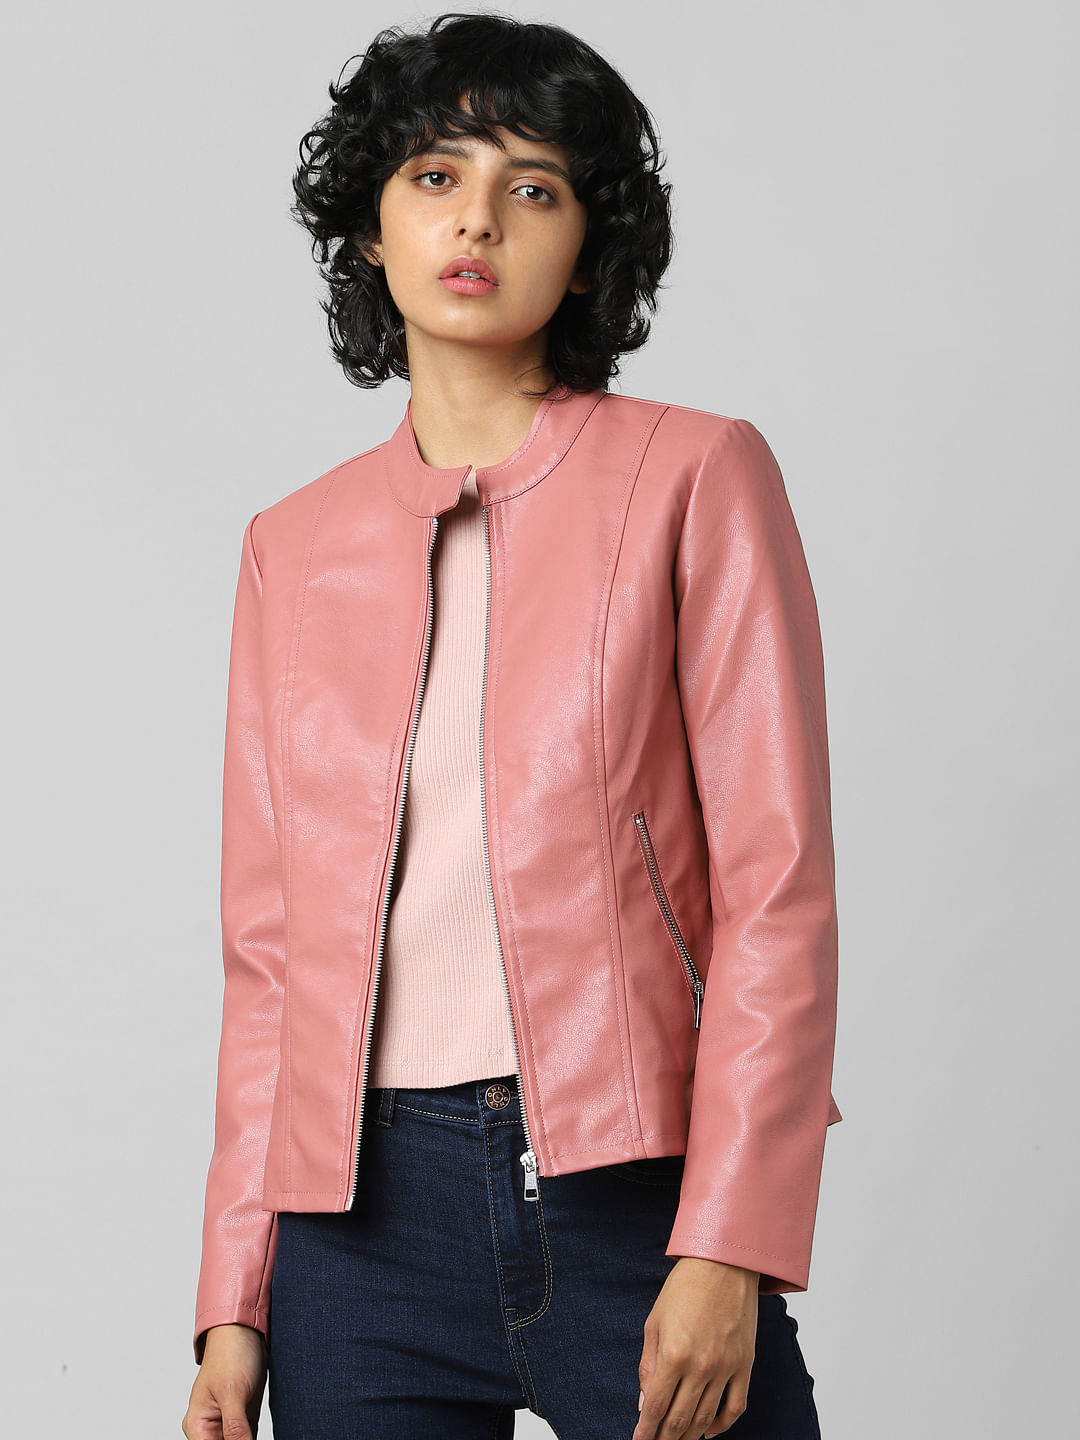 WOMEN FASHION Jackets Casual discount 74% Meisïe blazer Beige L 